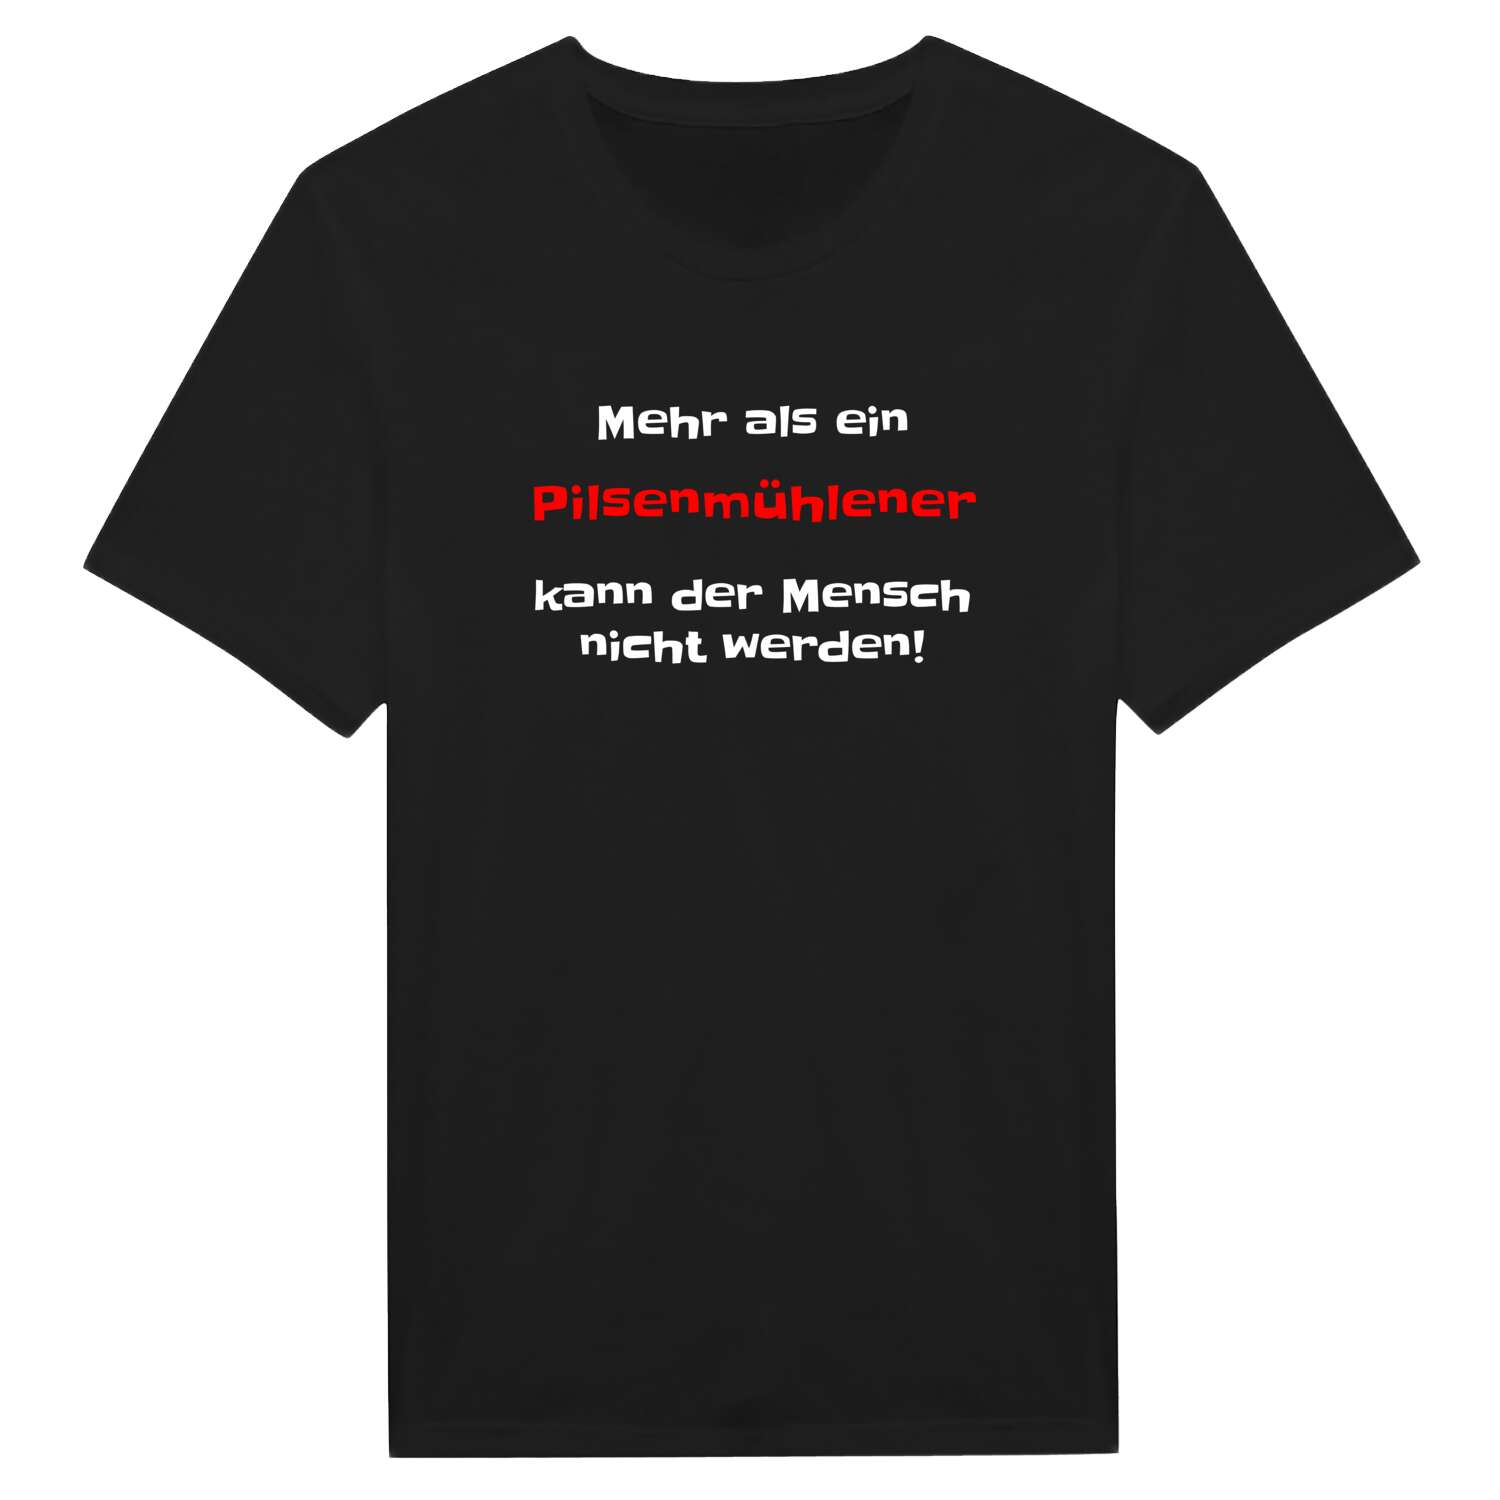 Pilsenmühle T-Shirt »Mehr als ein«